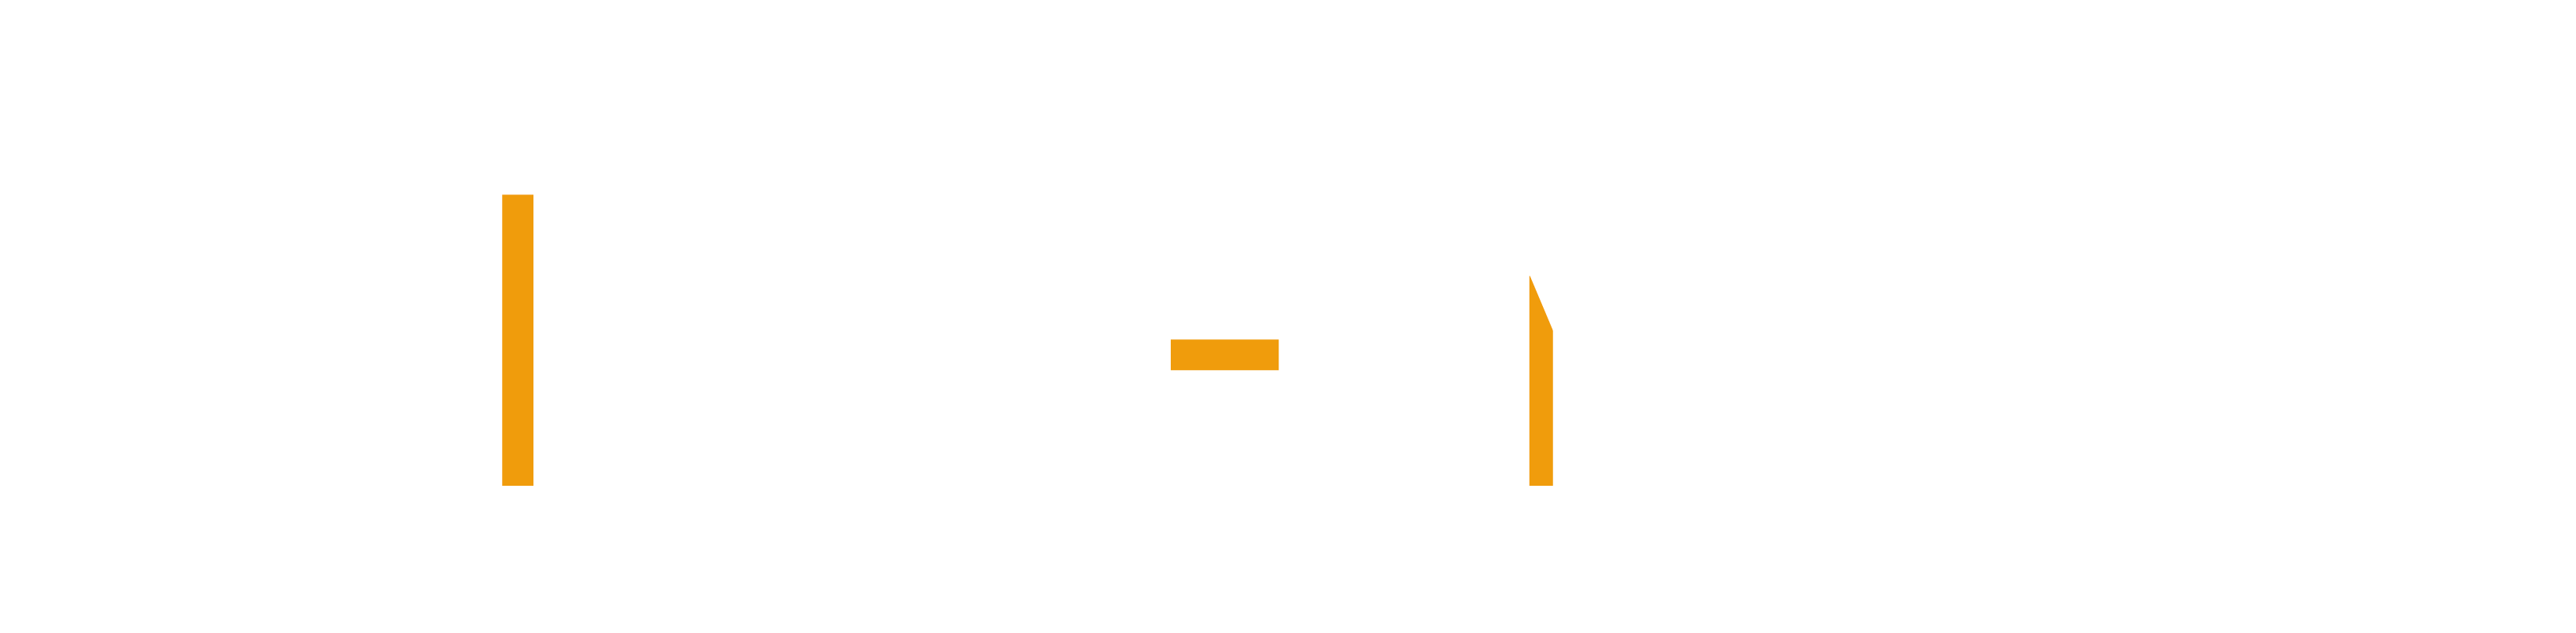 strat-image-logo-def2